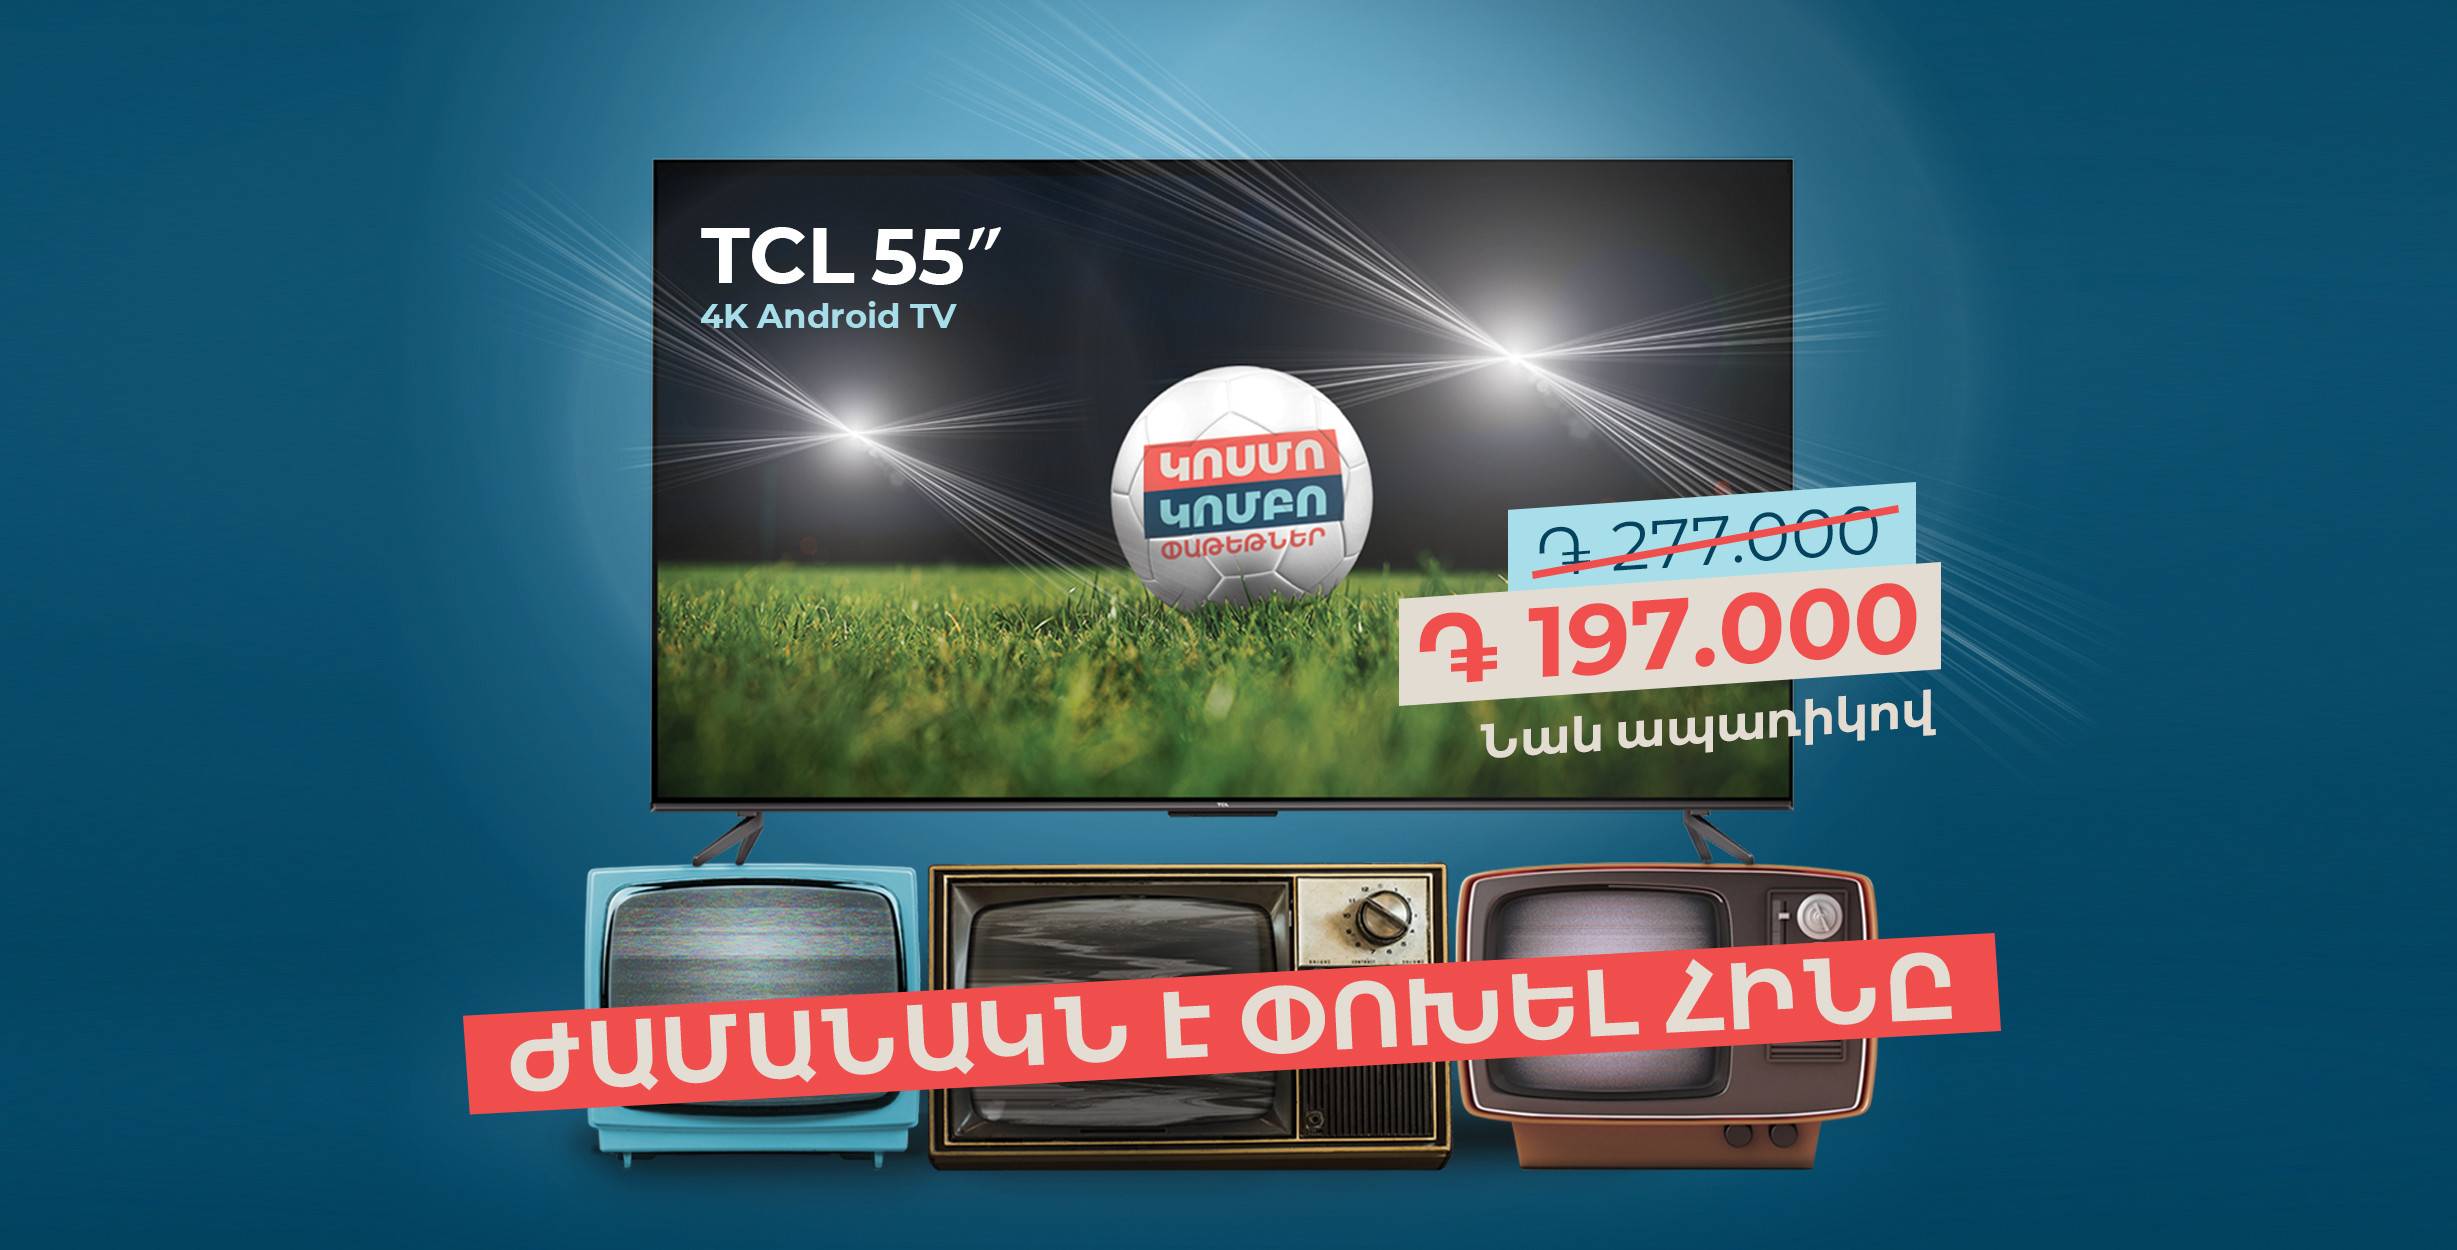 Մեծ հեռուստացույց՝ մատչելի գնով․ նոր առաջարկ Team Telecom Armenia-ից